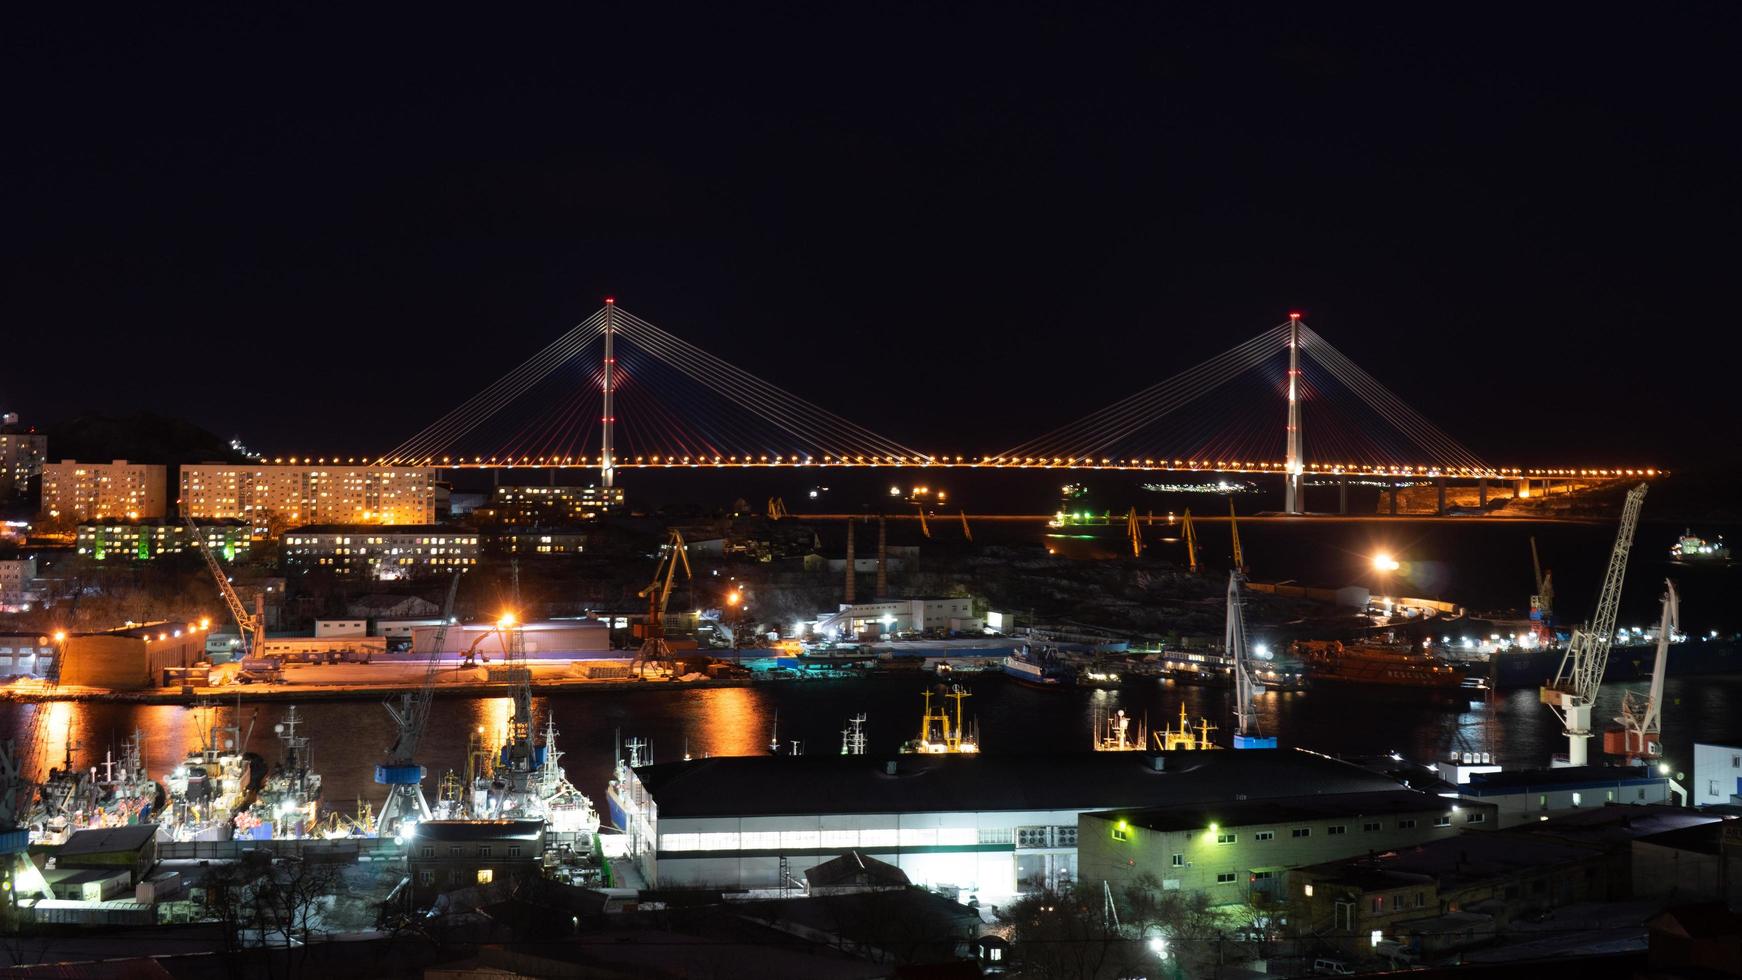 Nachtlandschaft mit Blick auf die russische Brücke. foto